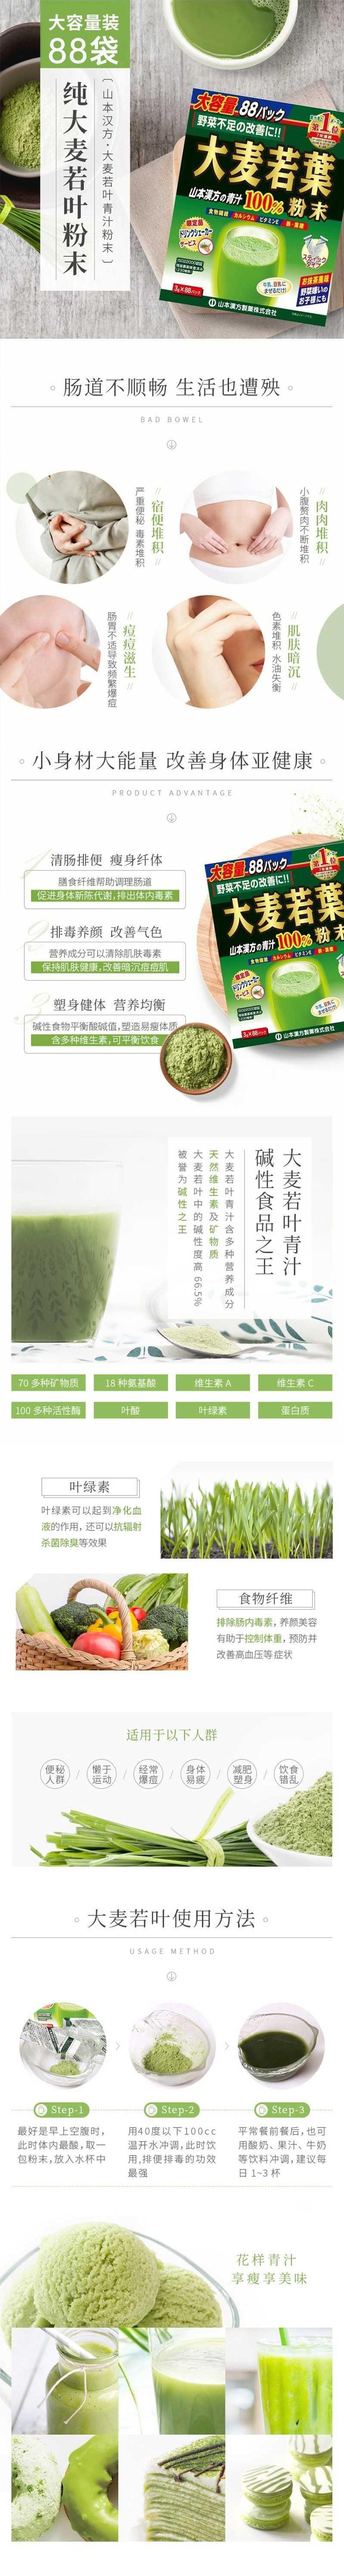 【日本直邮】YAMAMOTO山本汉方制药 大麦若叶青汁粉末 抹茶风味 88包入